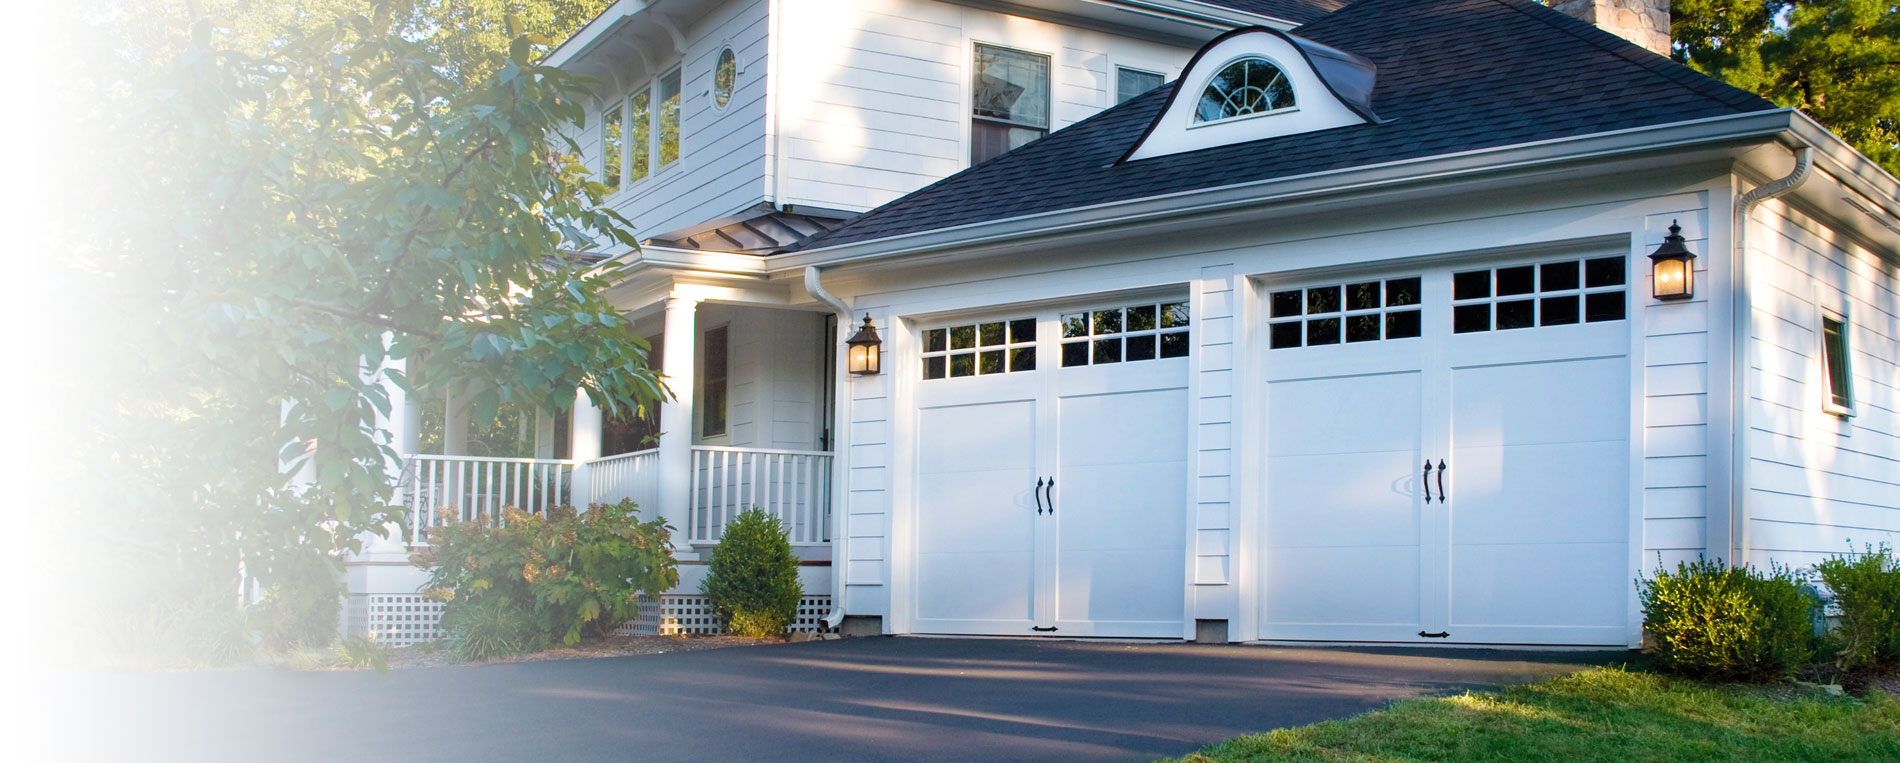 Should You Repair Garage Door Springs Yourself?